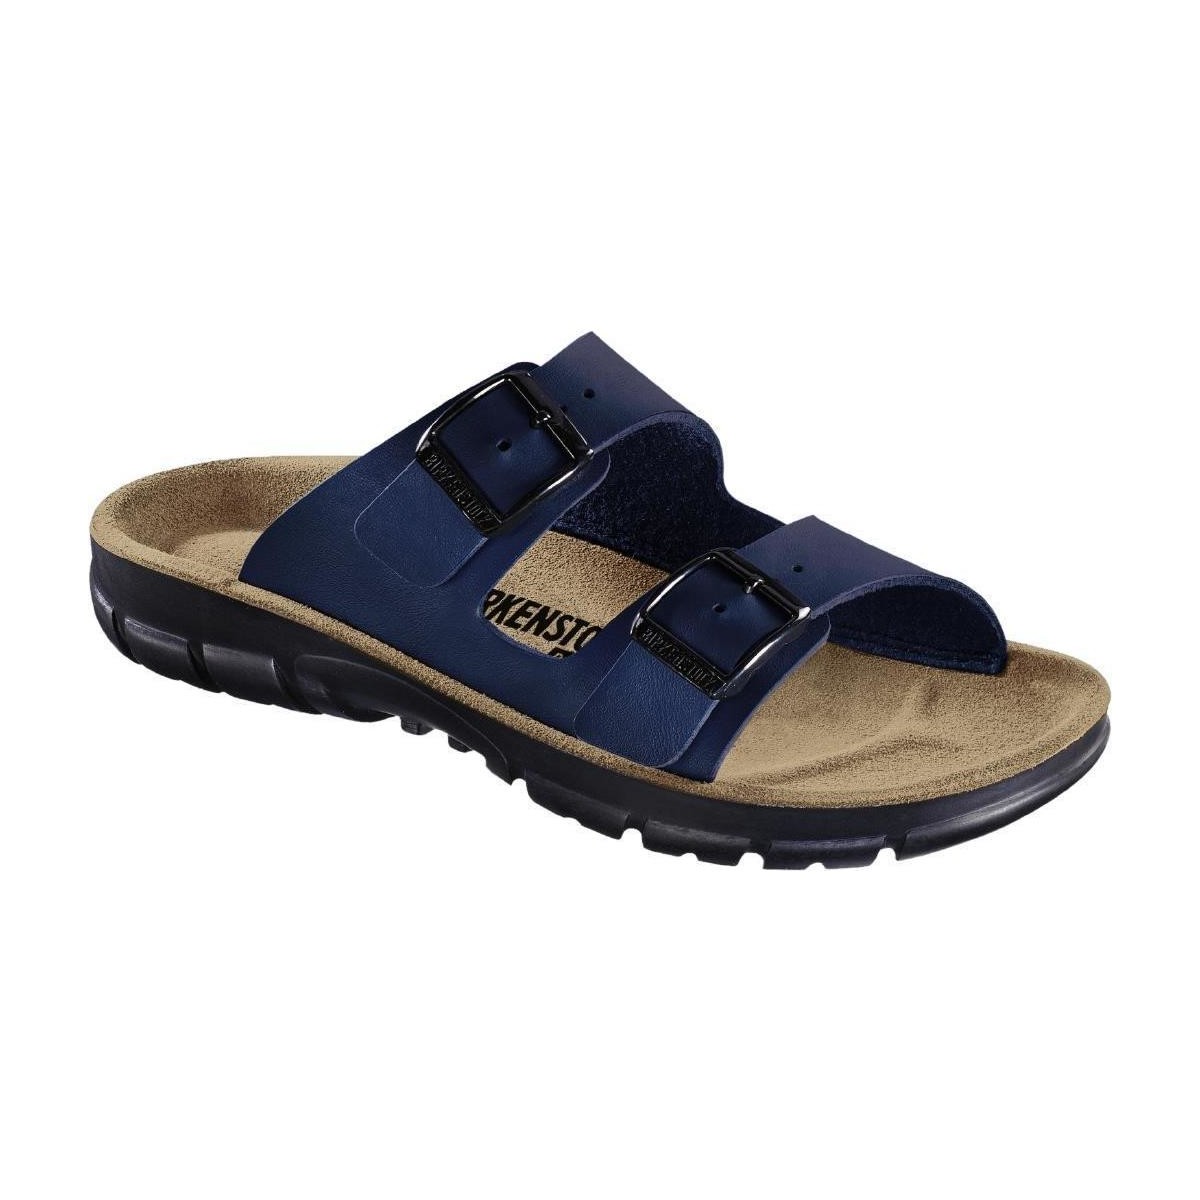 Schoenen Heren Leren slippers Birkenstock 520811 Blauw